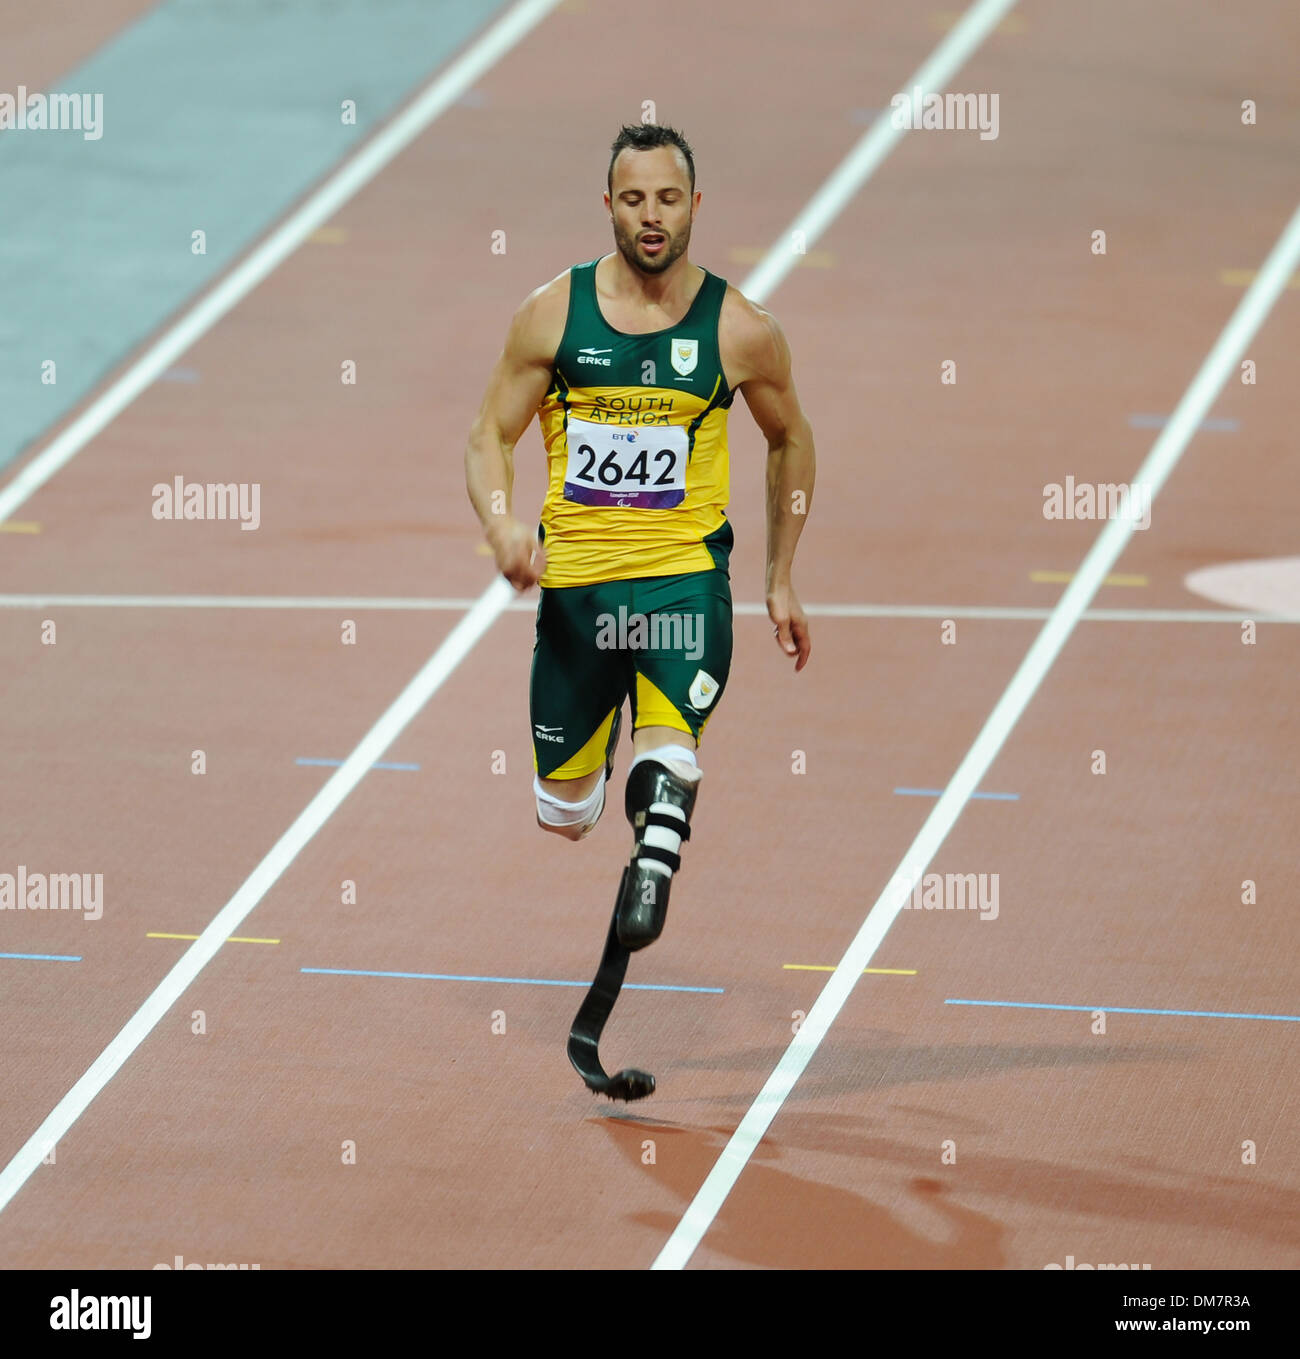 Oscar Pistorius d'Afrique du Sud établit un nouveau record du monde de 200m masculin T44 de chaleur au cours de Jeux paralympiques de 2012 à Londres aux Jeux Olympiques Banque D'Images